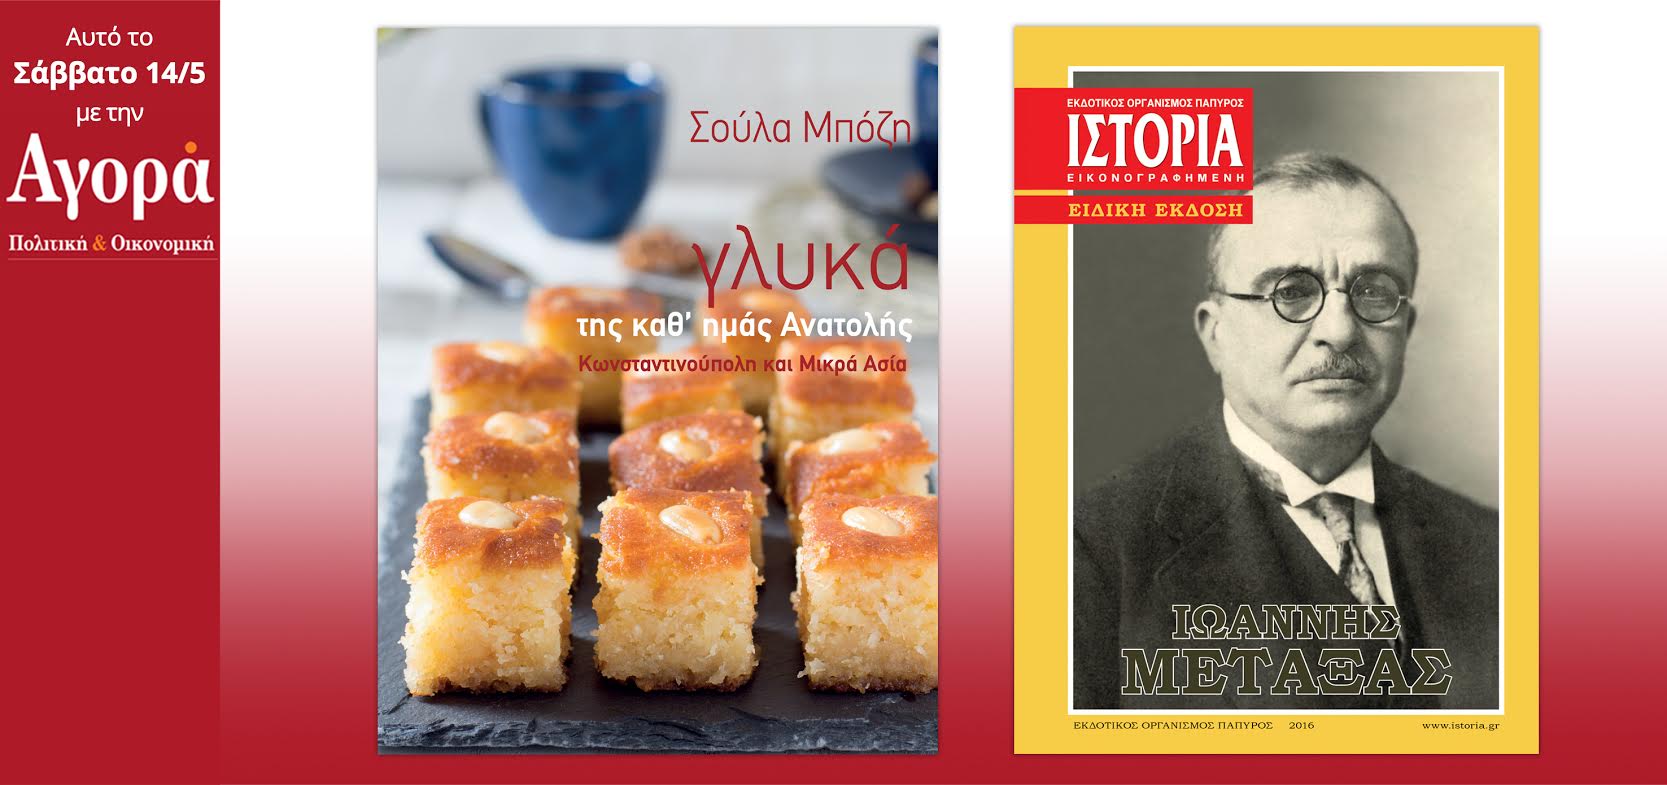 Σήμερα στην Αγορά: Σ. Μπόζη – Πολίτικα και Μικρασιατικά γλυκά και περιοδικό Ιστορία